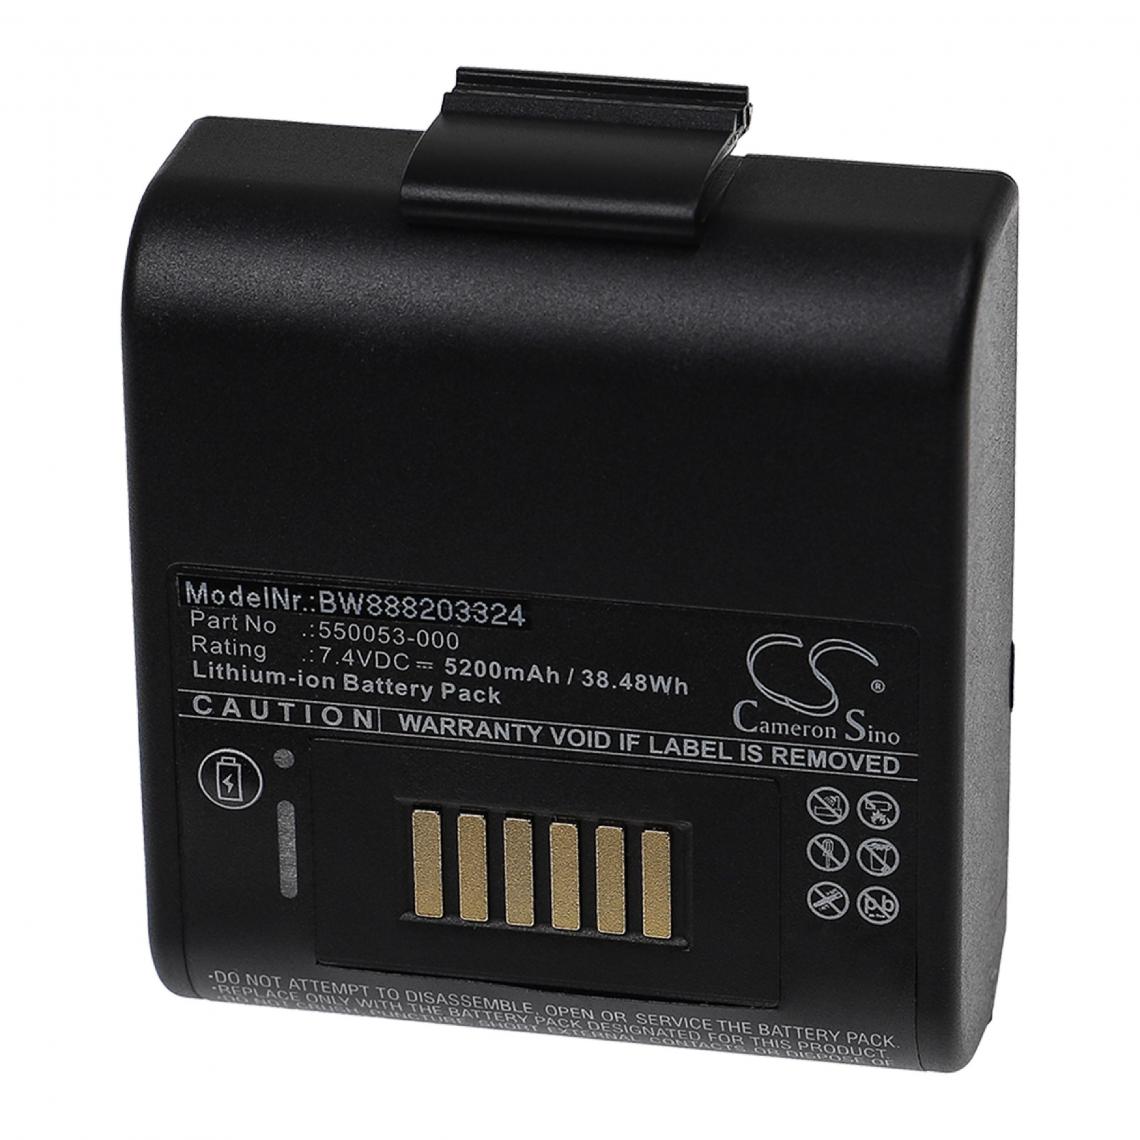 Vhbw - vhbw Batterie compatible avec Honeywell RP4 imprimante, scanner, imprimante d'étiquettes (5200mAh, 7,4V, Li-ion) - Imprimante Jet d'encre